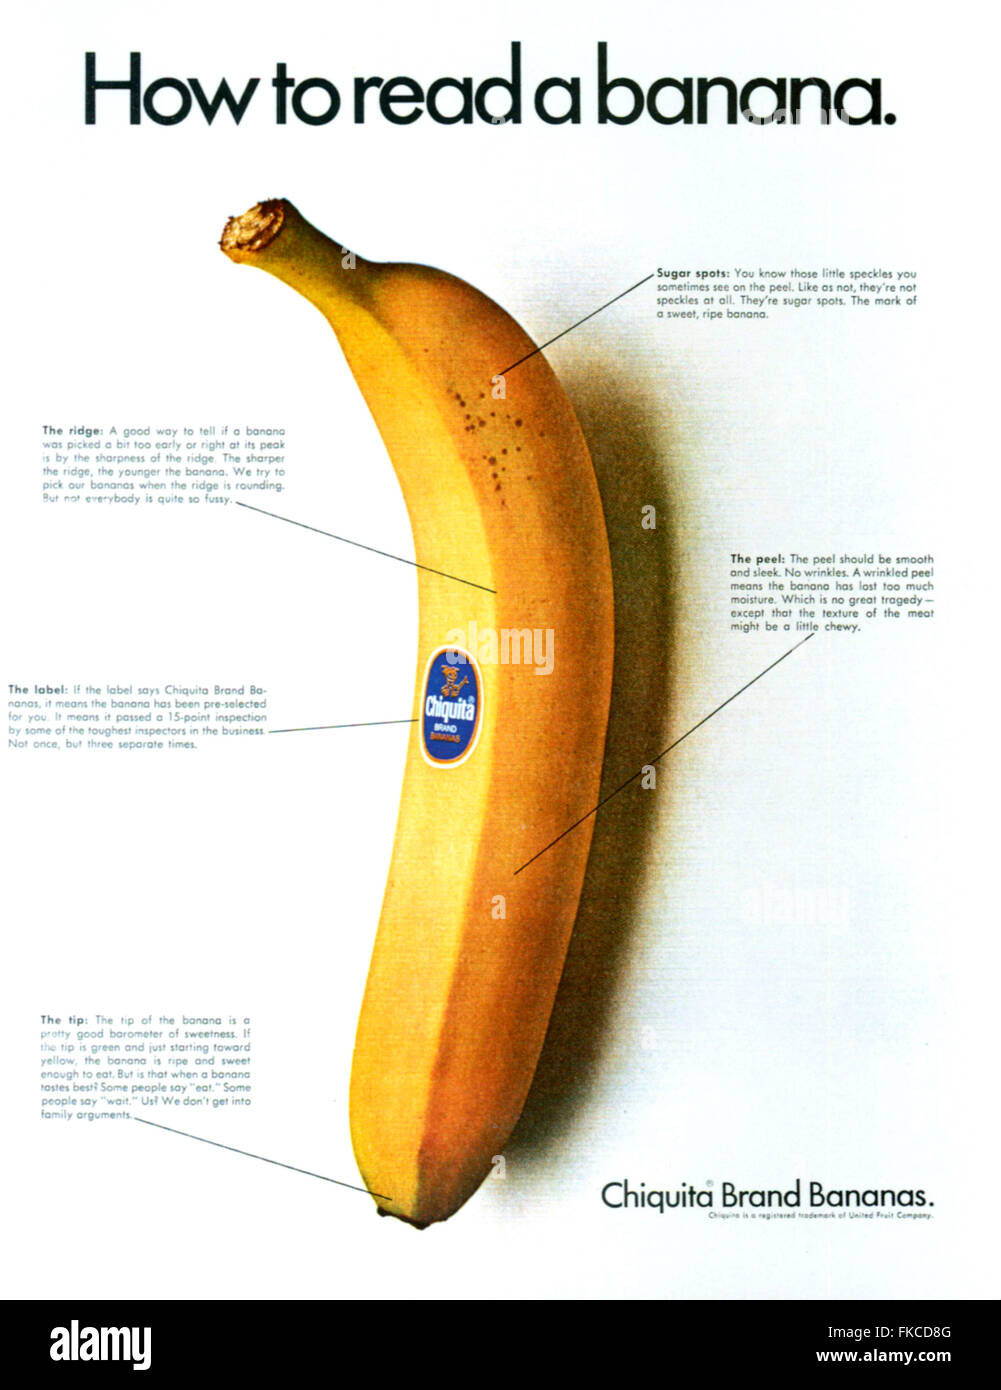 1960s USA Chiquita Magazine Advert Stock Photo